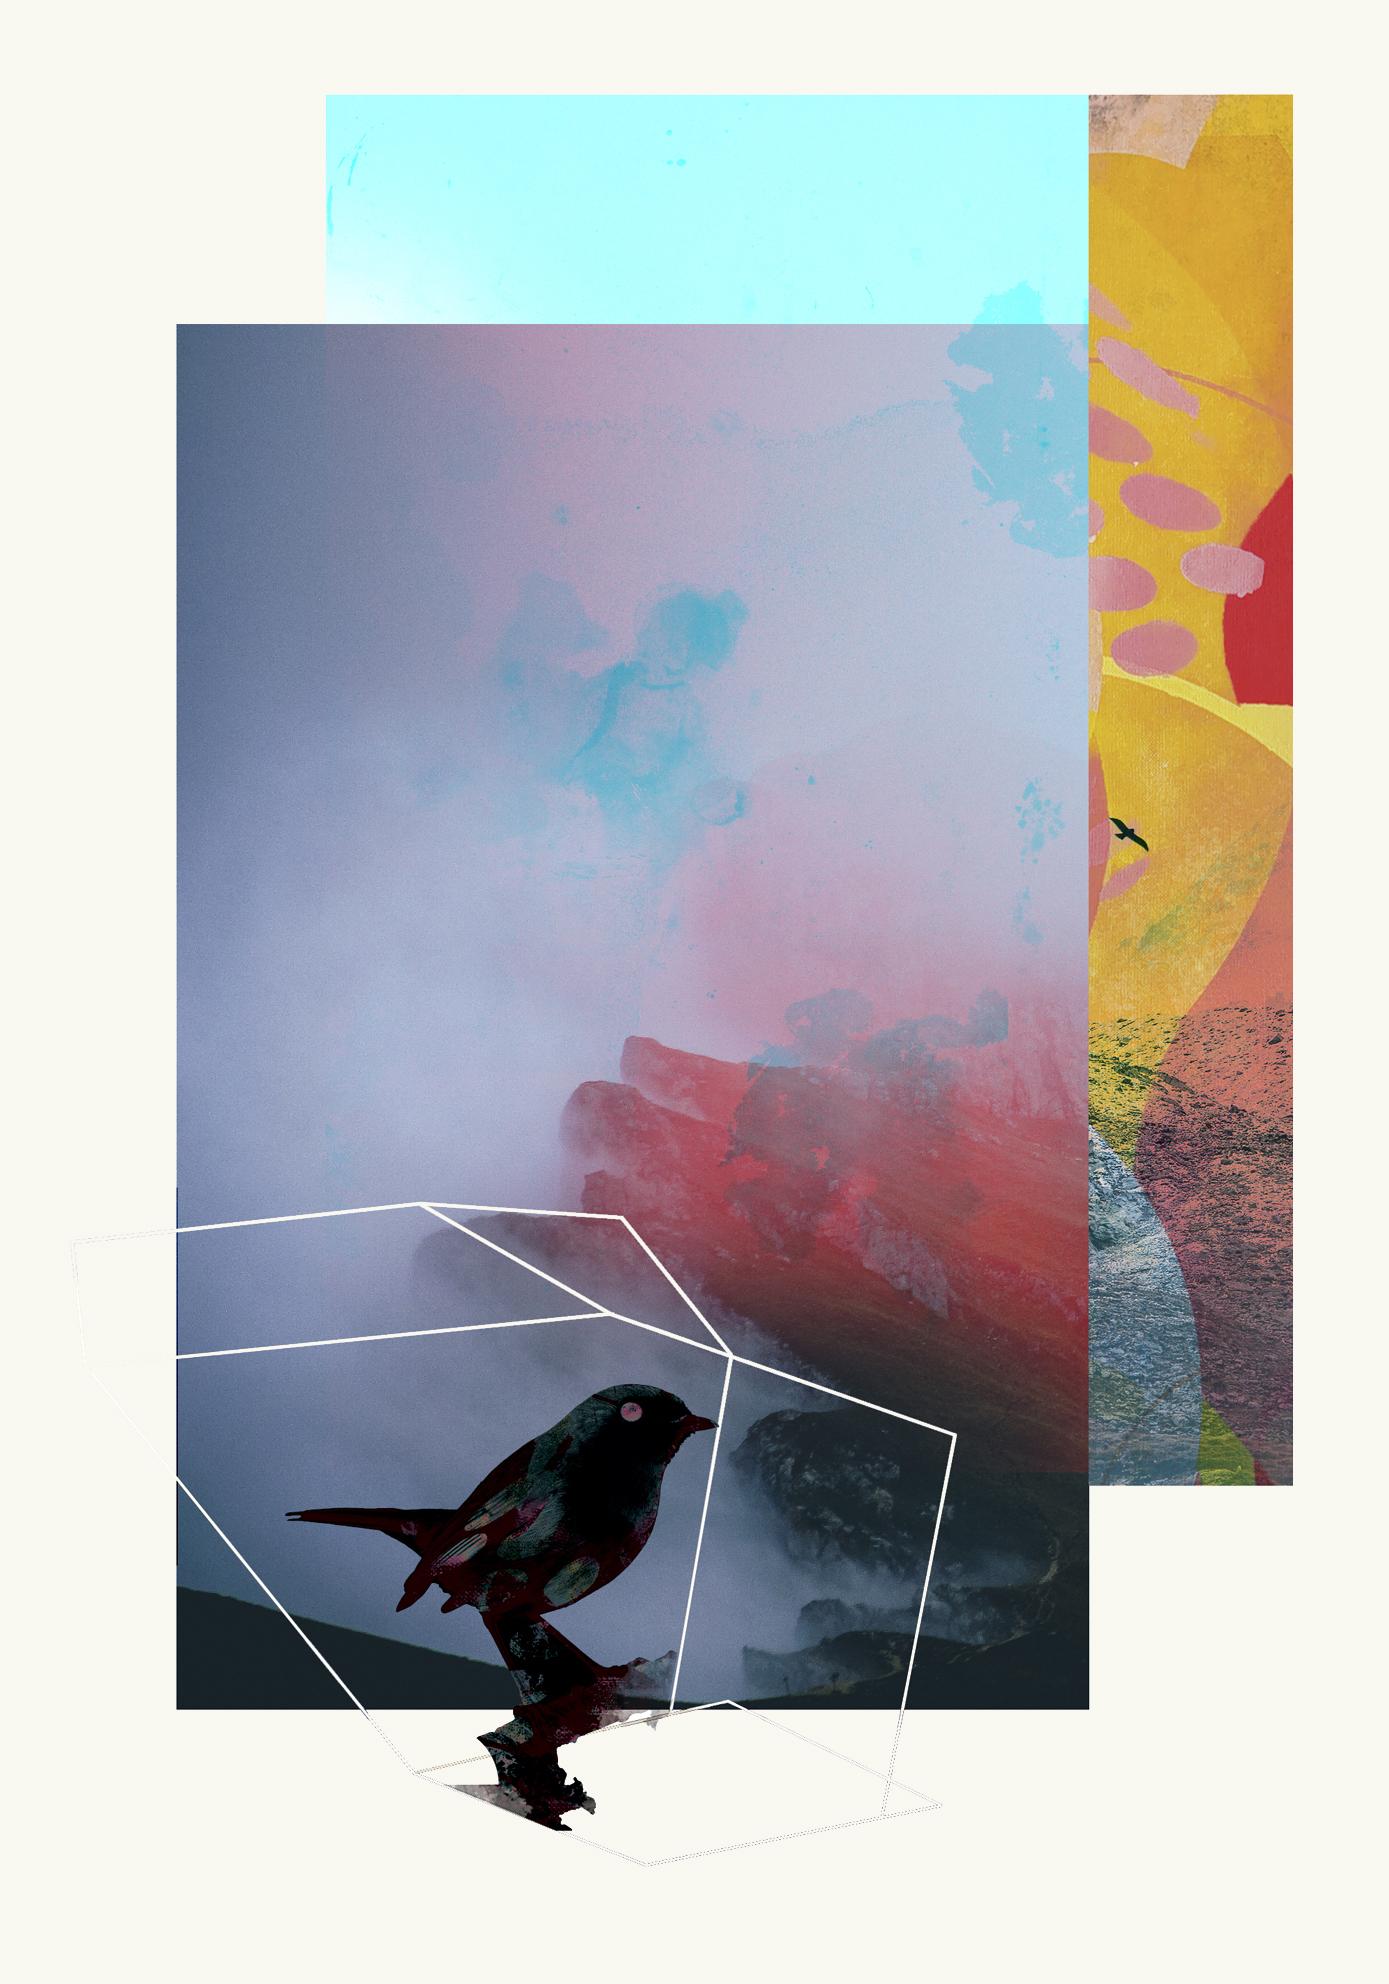 Oiseaux 2 -Contemporain, Abstrait, Gestuel, Street art, Pop, Moderne, Géométrique - Mixed Media Art de Francisco Nicolás